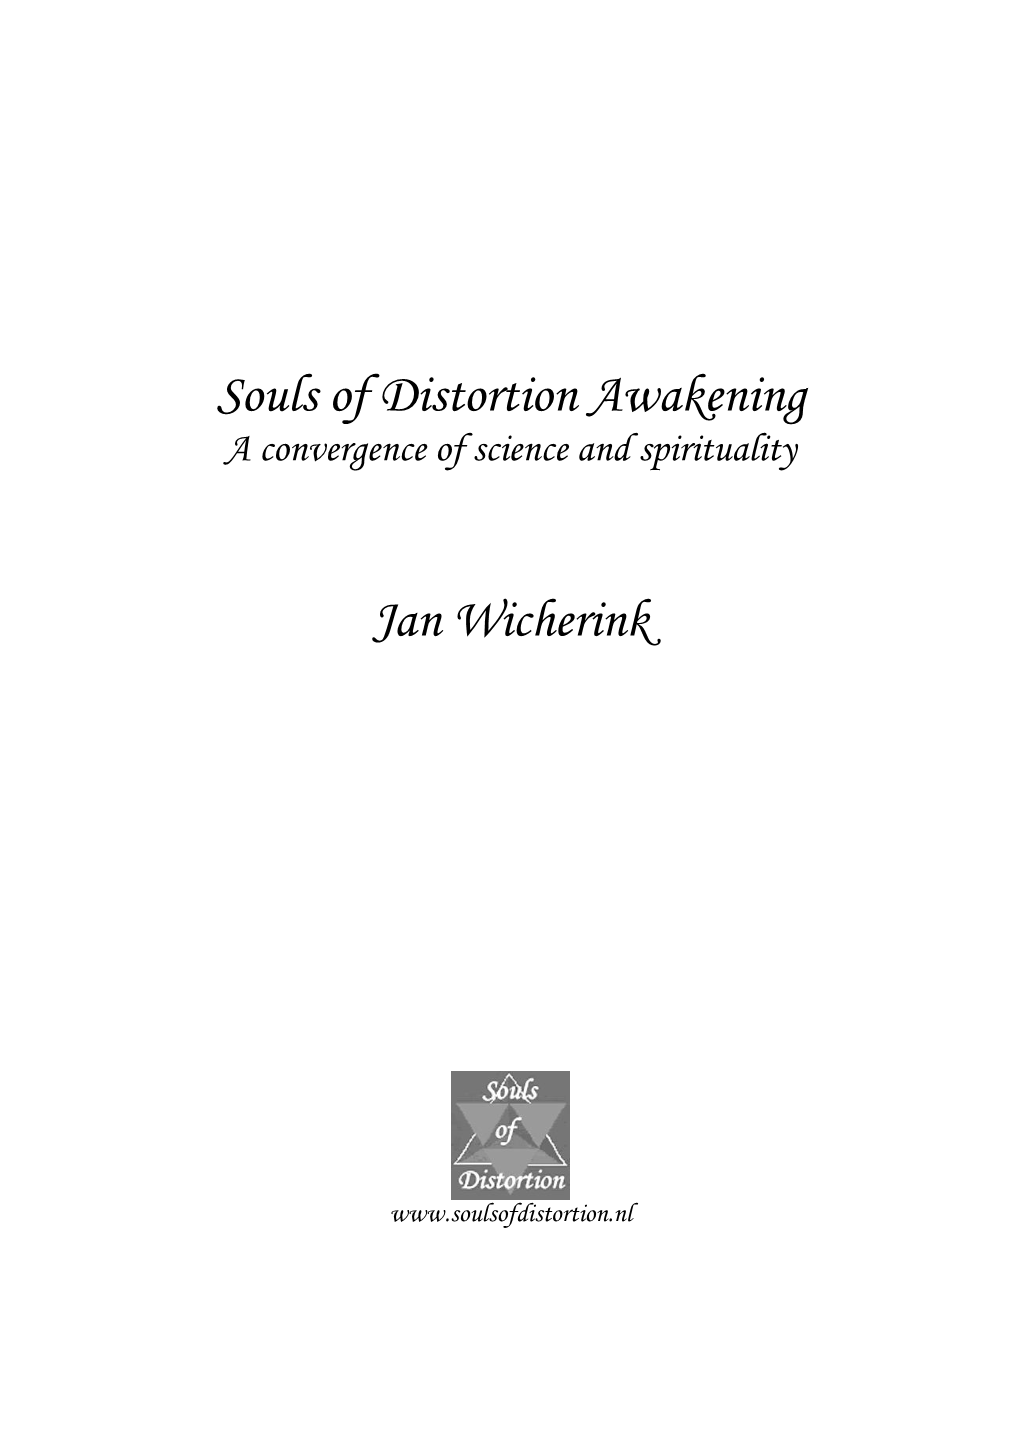 Souls of Distortion Awakening Jan Wicherink